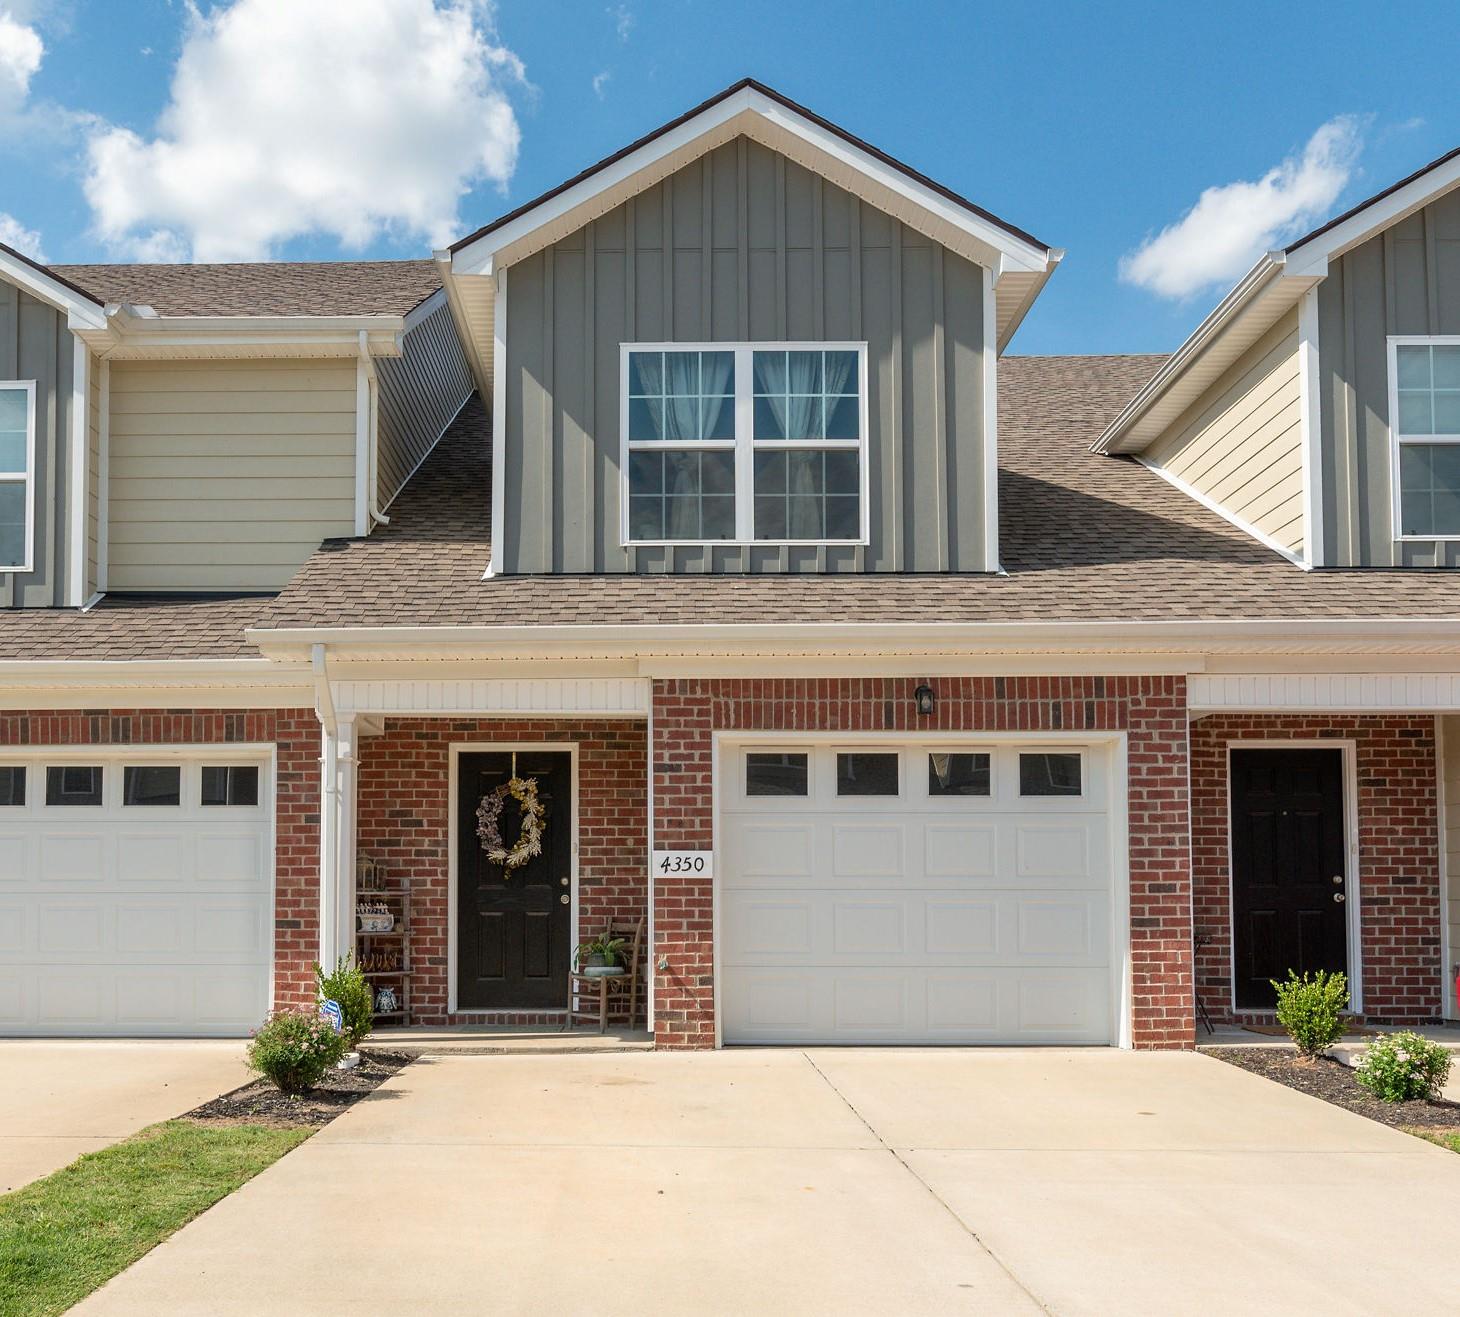 Aurora Place Homes For Sale | Murfreesboro TN 37127